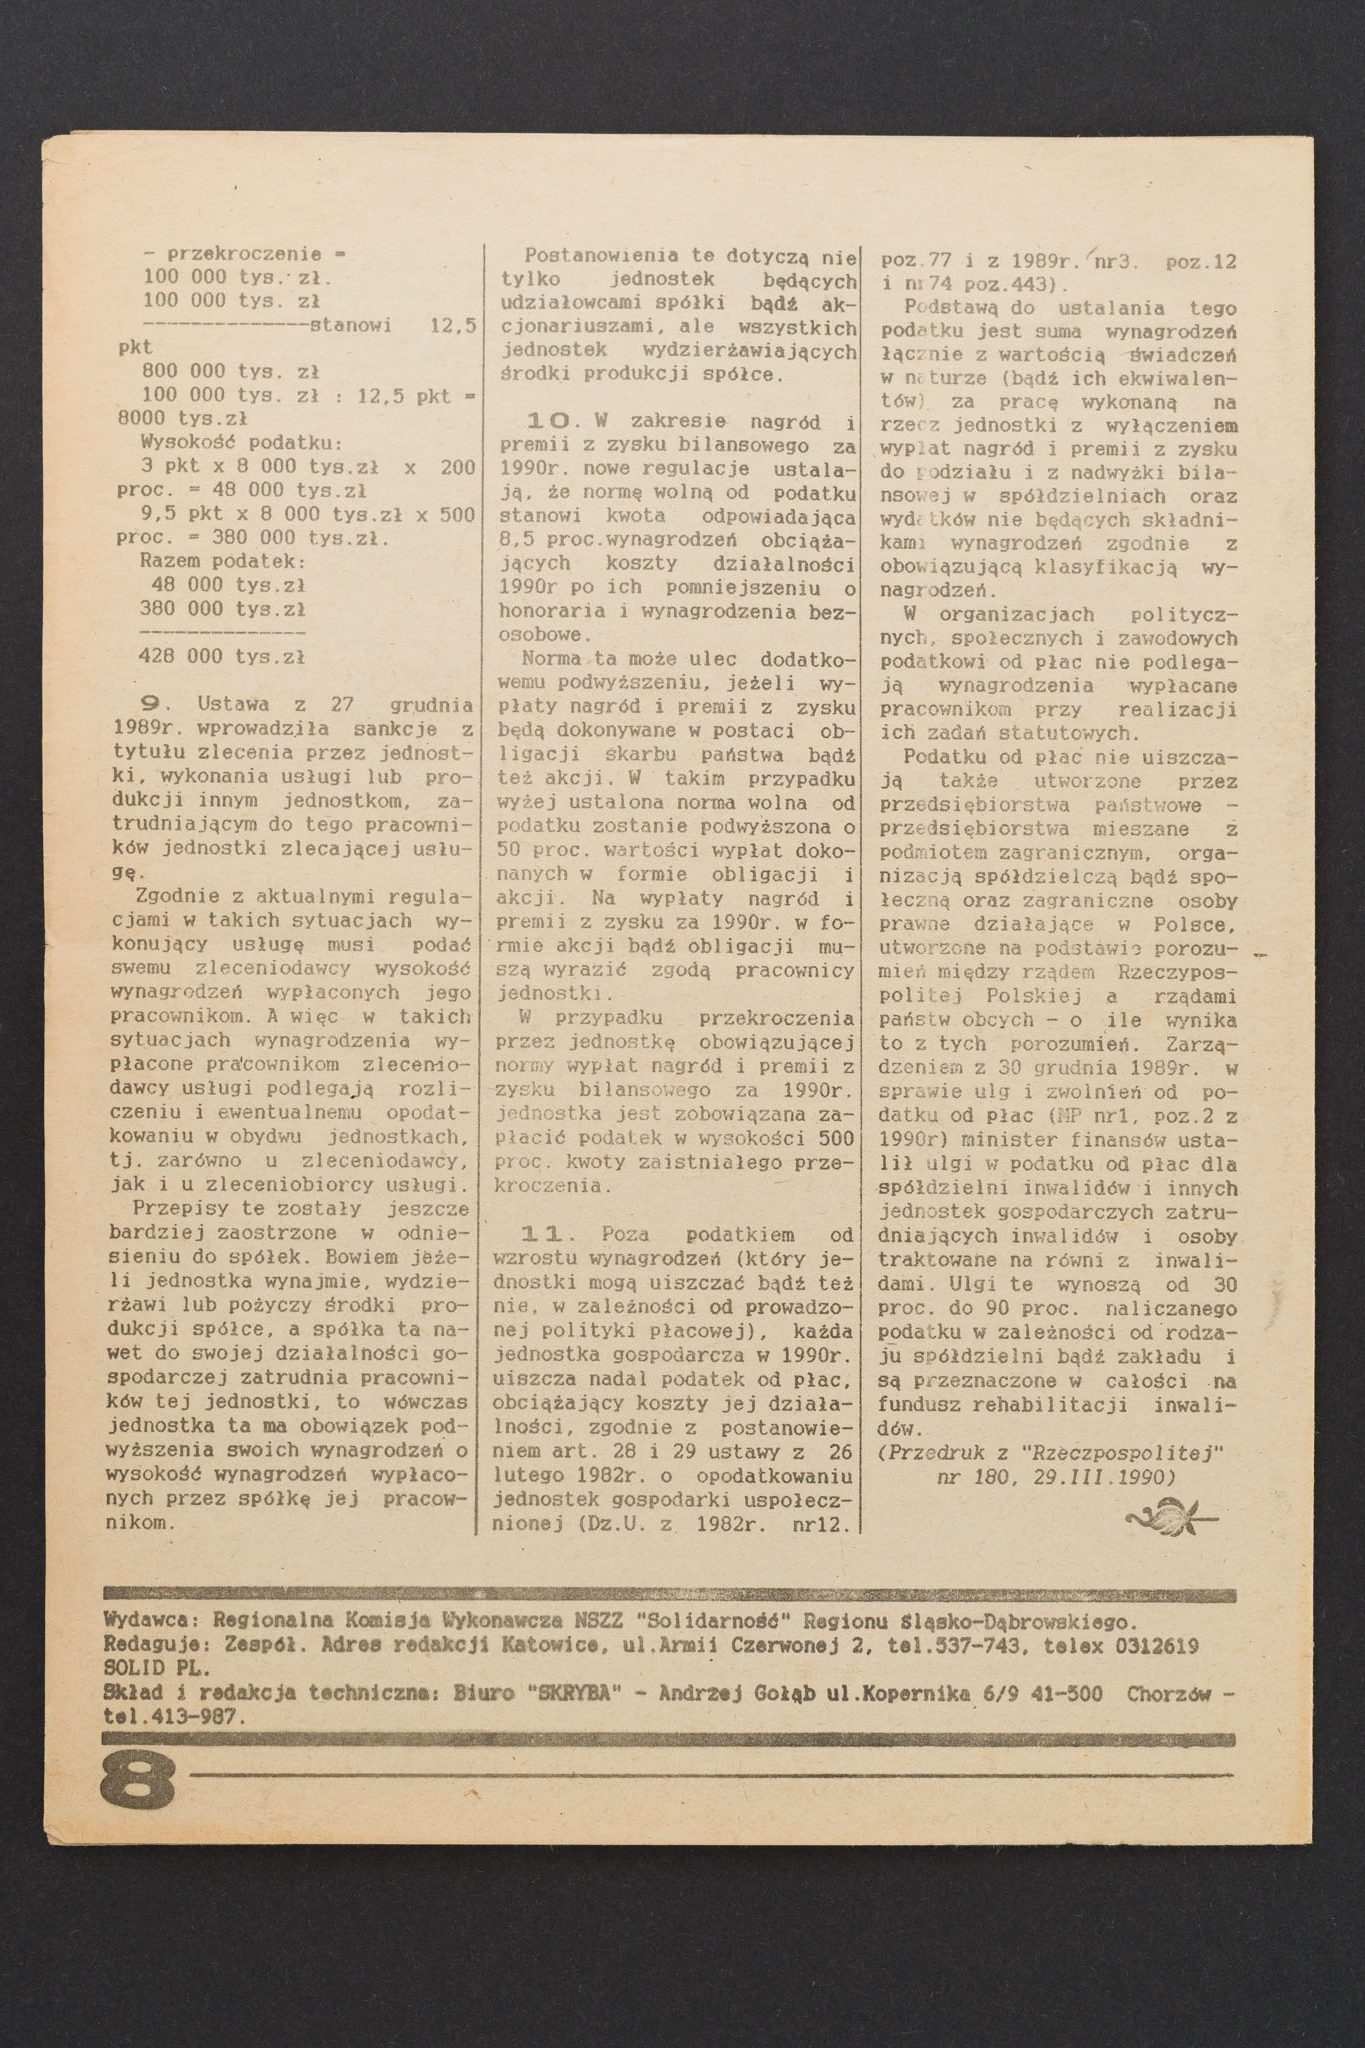 Biuletyn informacyjny region śląsko-dąbrowski nr 13 (36) 05.04.1990